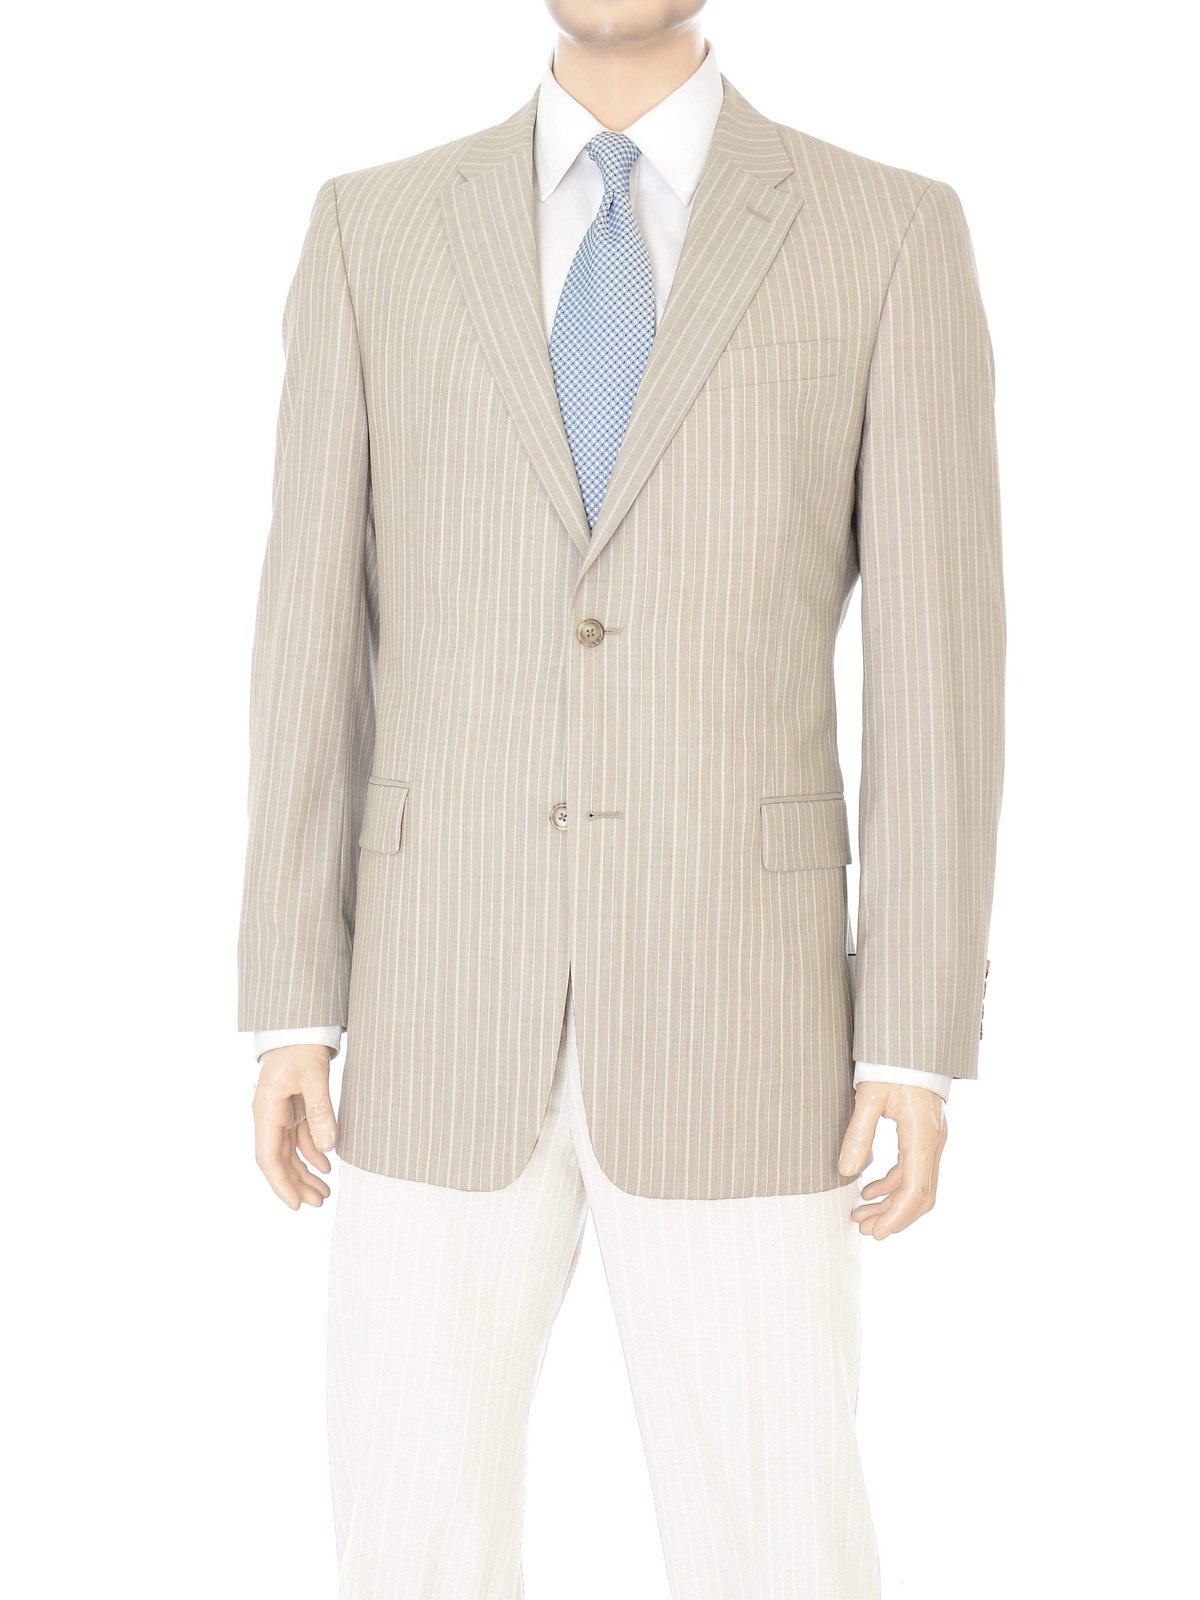 Willis & Walker  Modern Fit Tan Striped Two Button Wool Blazer Sportcoat - The Suit Depot